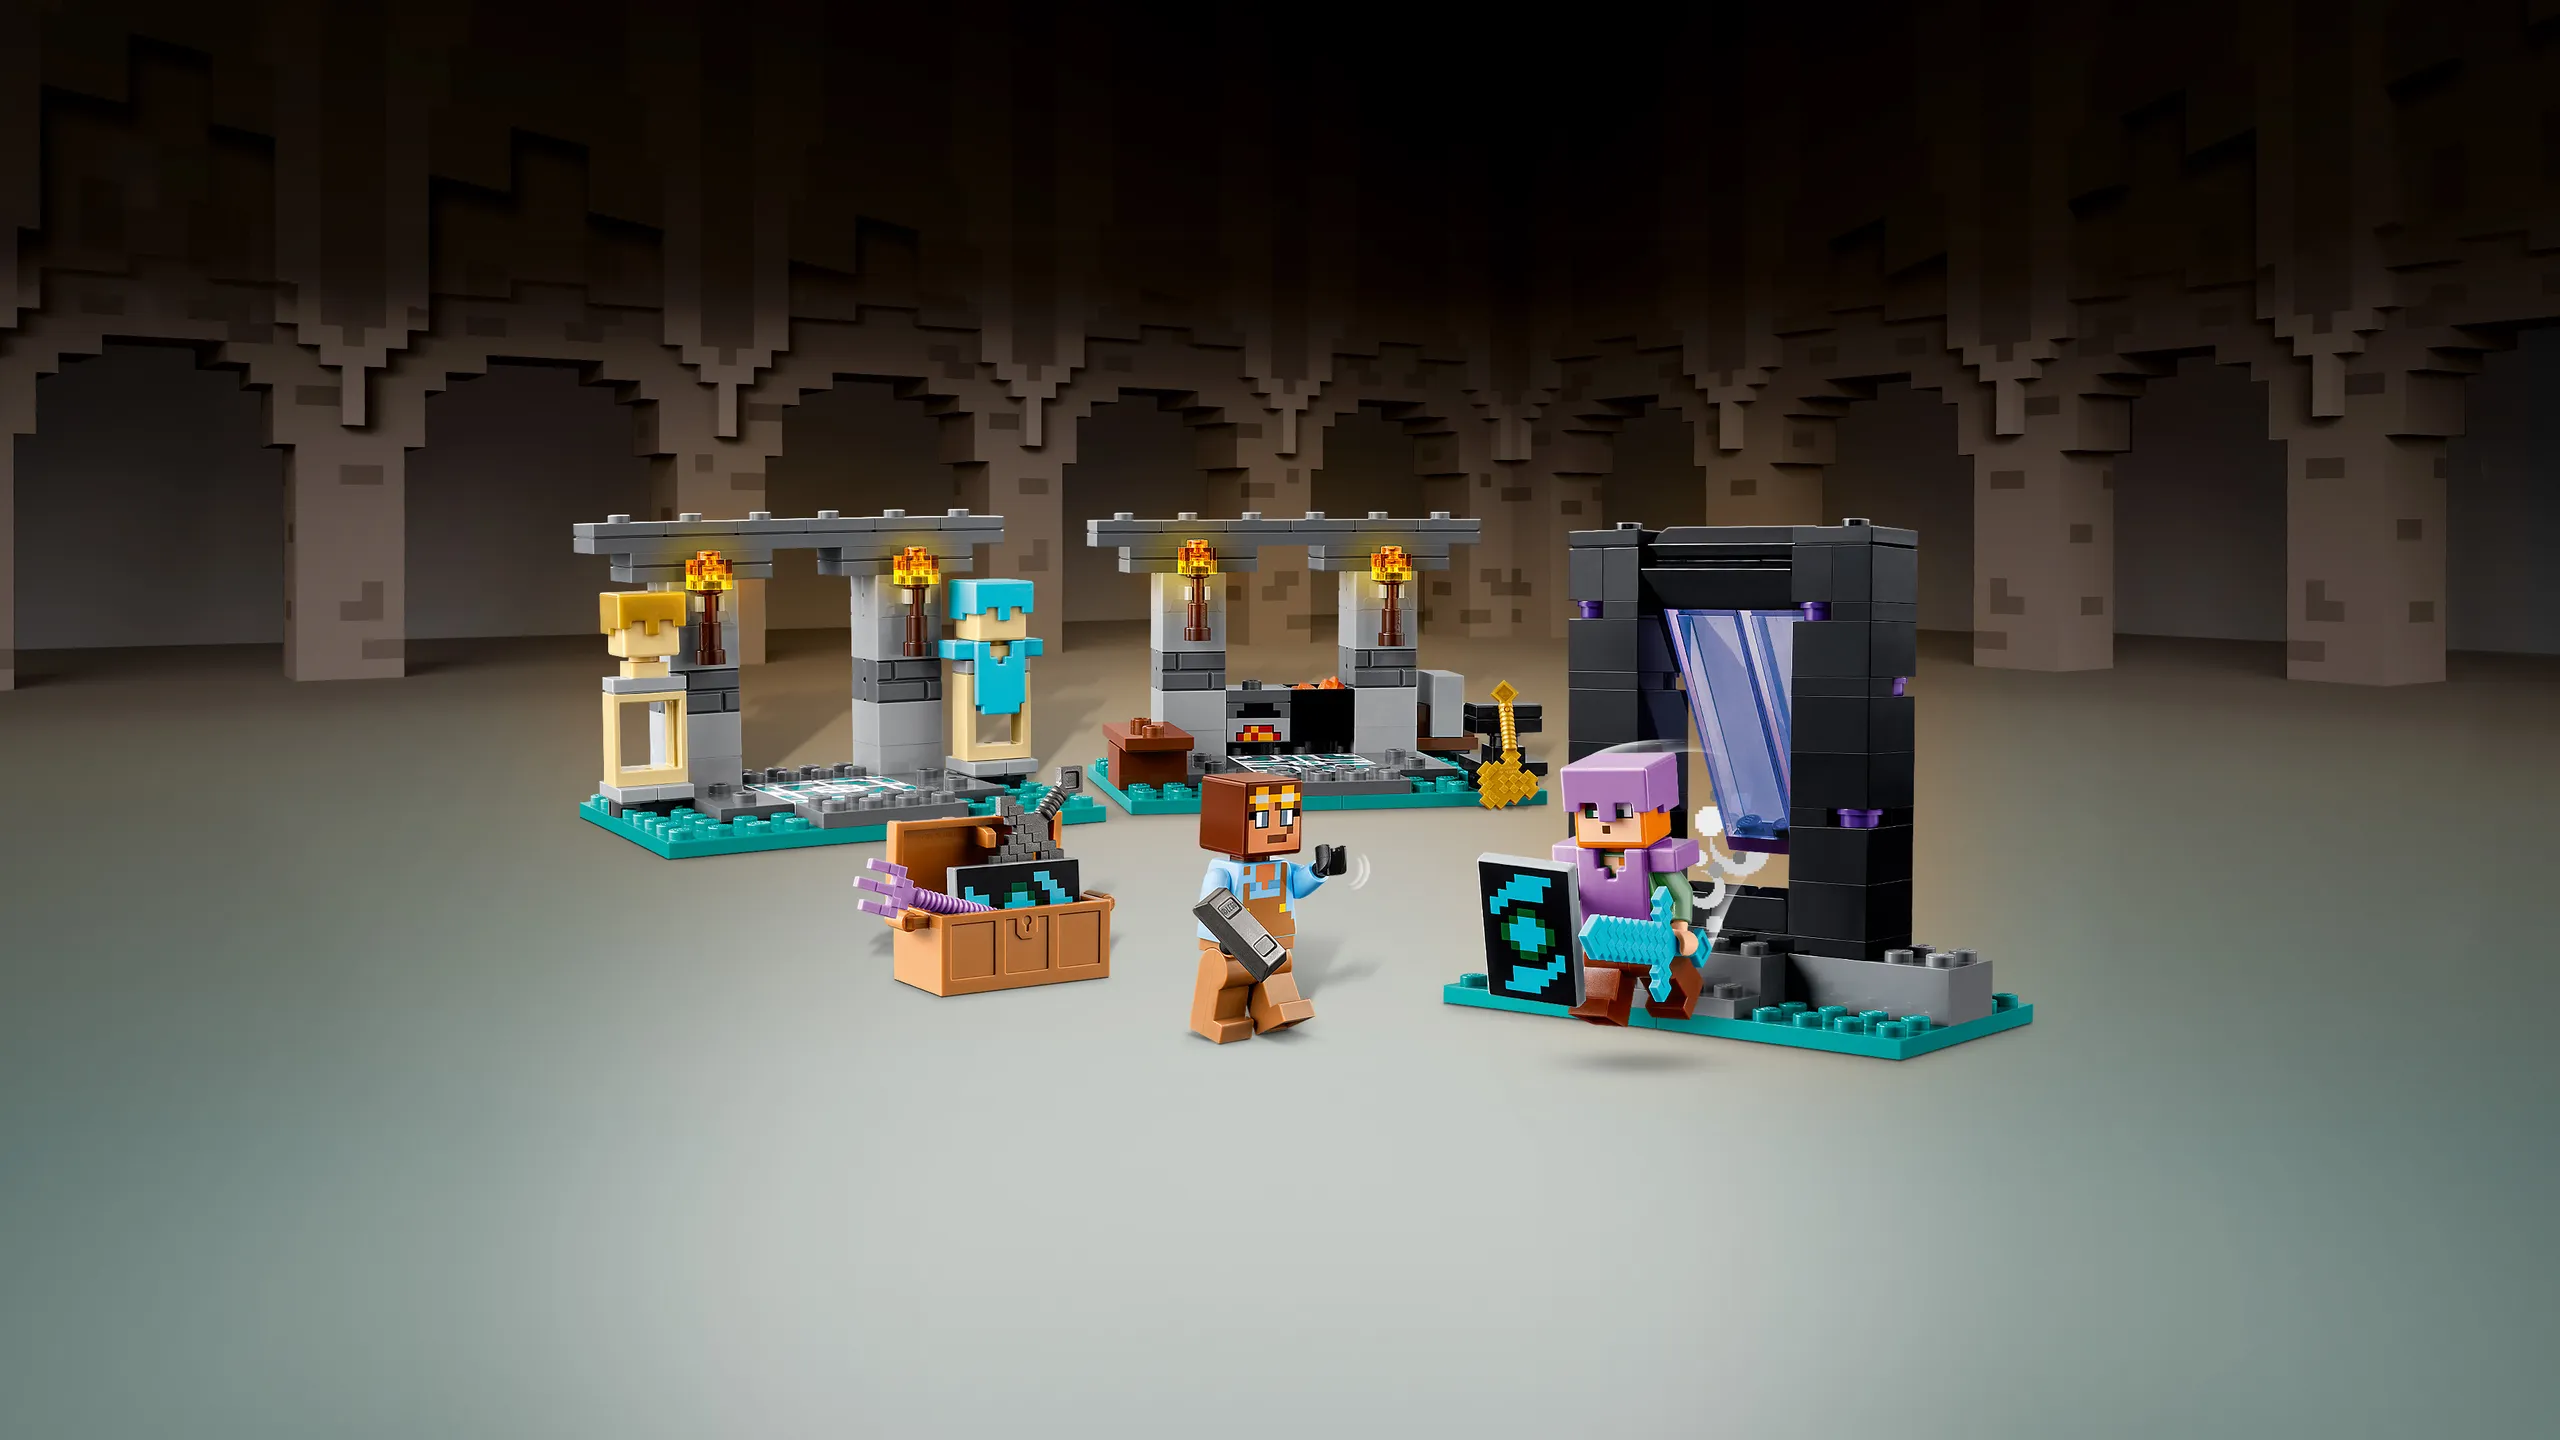 ▻ Sur le Shop LEGO : les nouveautés LEGO Minecraft 2023 sont en ligne -  HOTH BRICKS